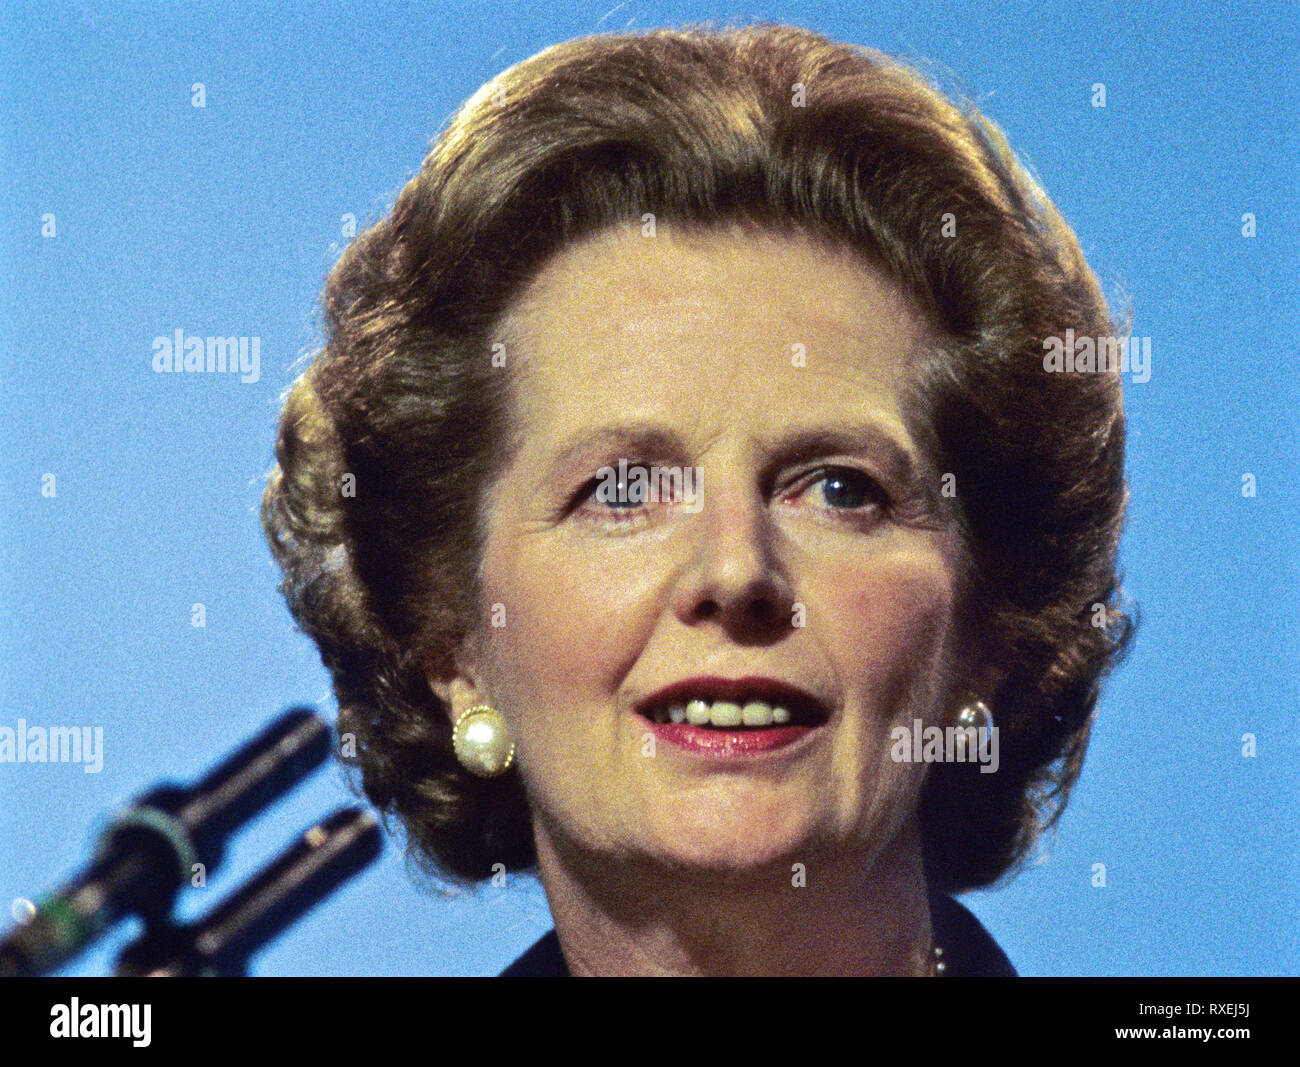 Margaret Thatcher auf dem Höhepunkt ihrer Befugnisse in den frühen 1980er Jahren von Margaret Thatcher, erste Frau Großbritanniens Premierminister seltene Farb 'Ausdruck' Bilder von 1980. Stockfoto